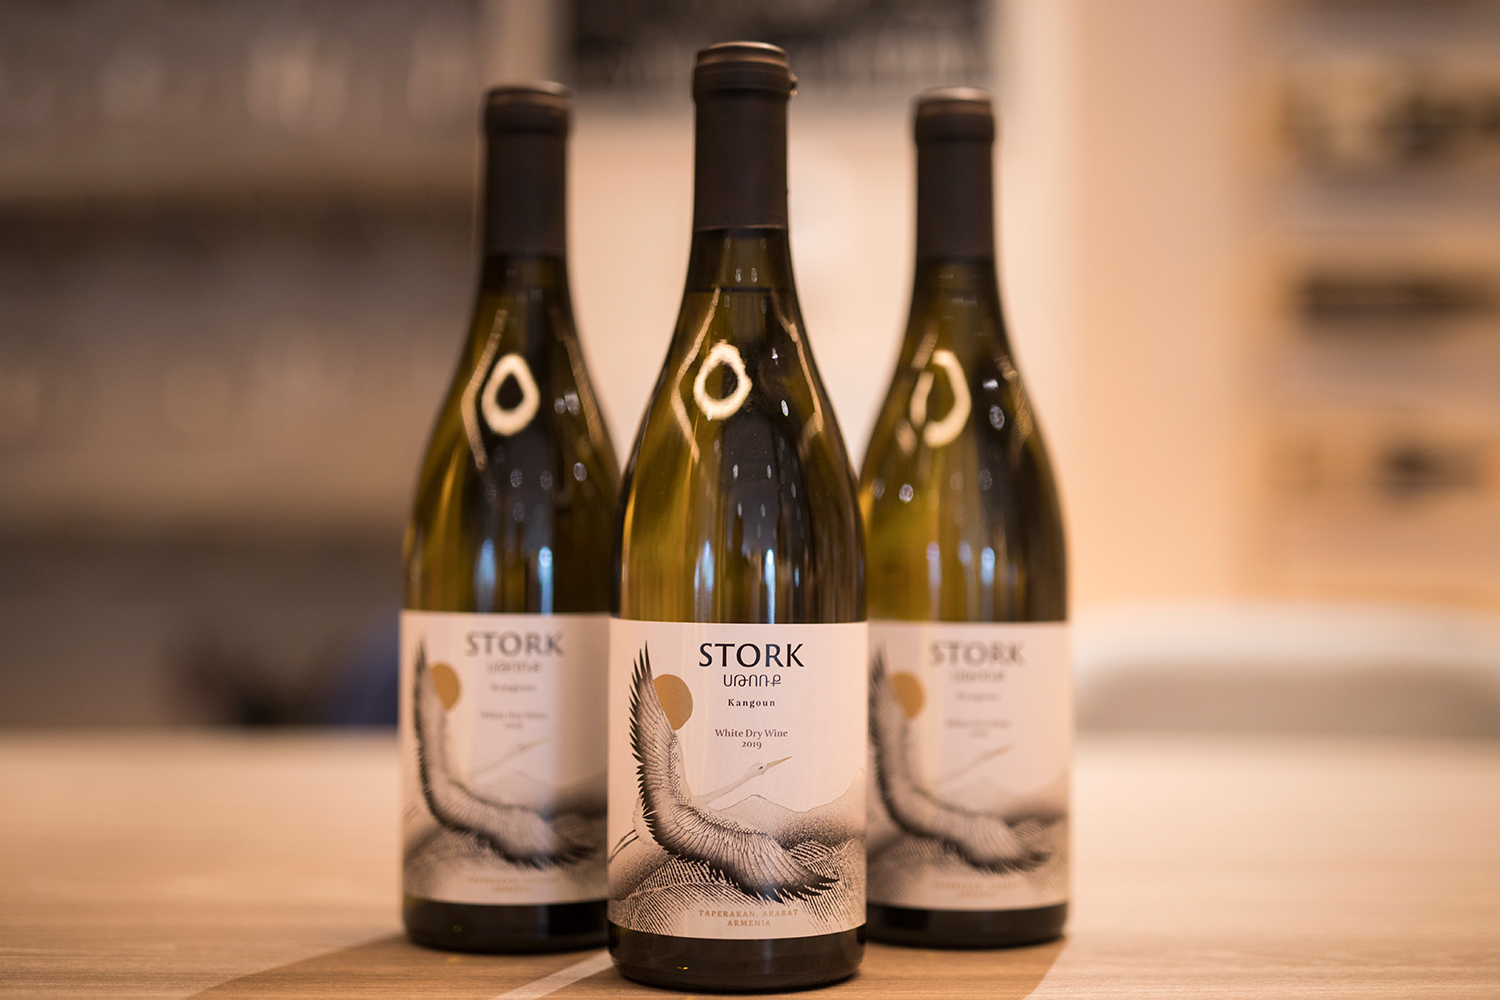 Stork`Տափերականի Կանգունից ծնված եւ բնակարանում պատրաստված գինին